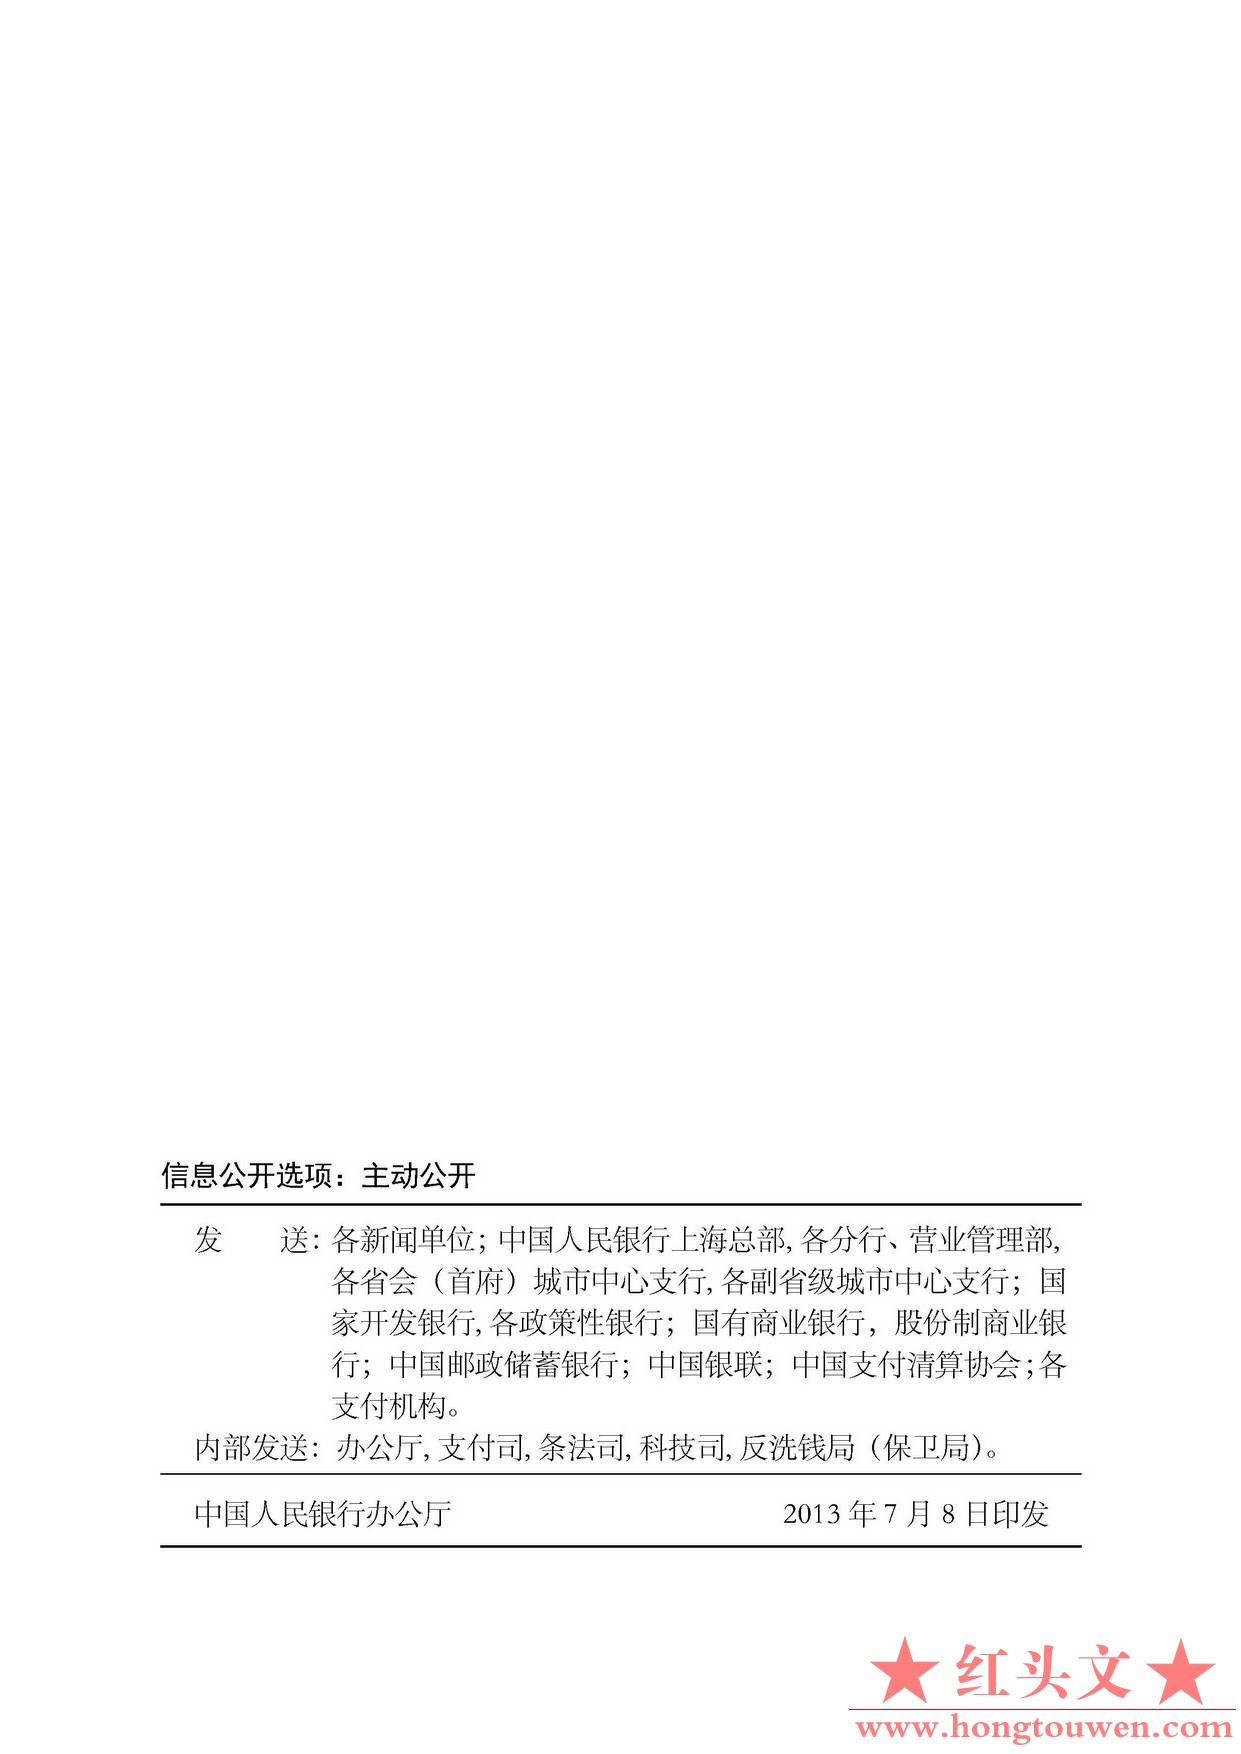 中国人民银行公告[2013]第9号-银行卡收单业务管理办法_页面_15.jpg